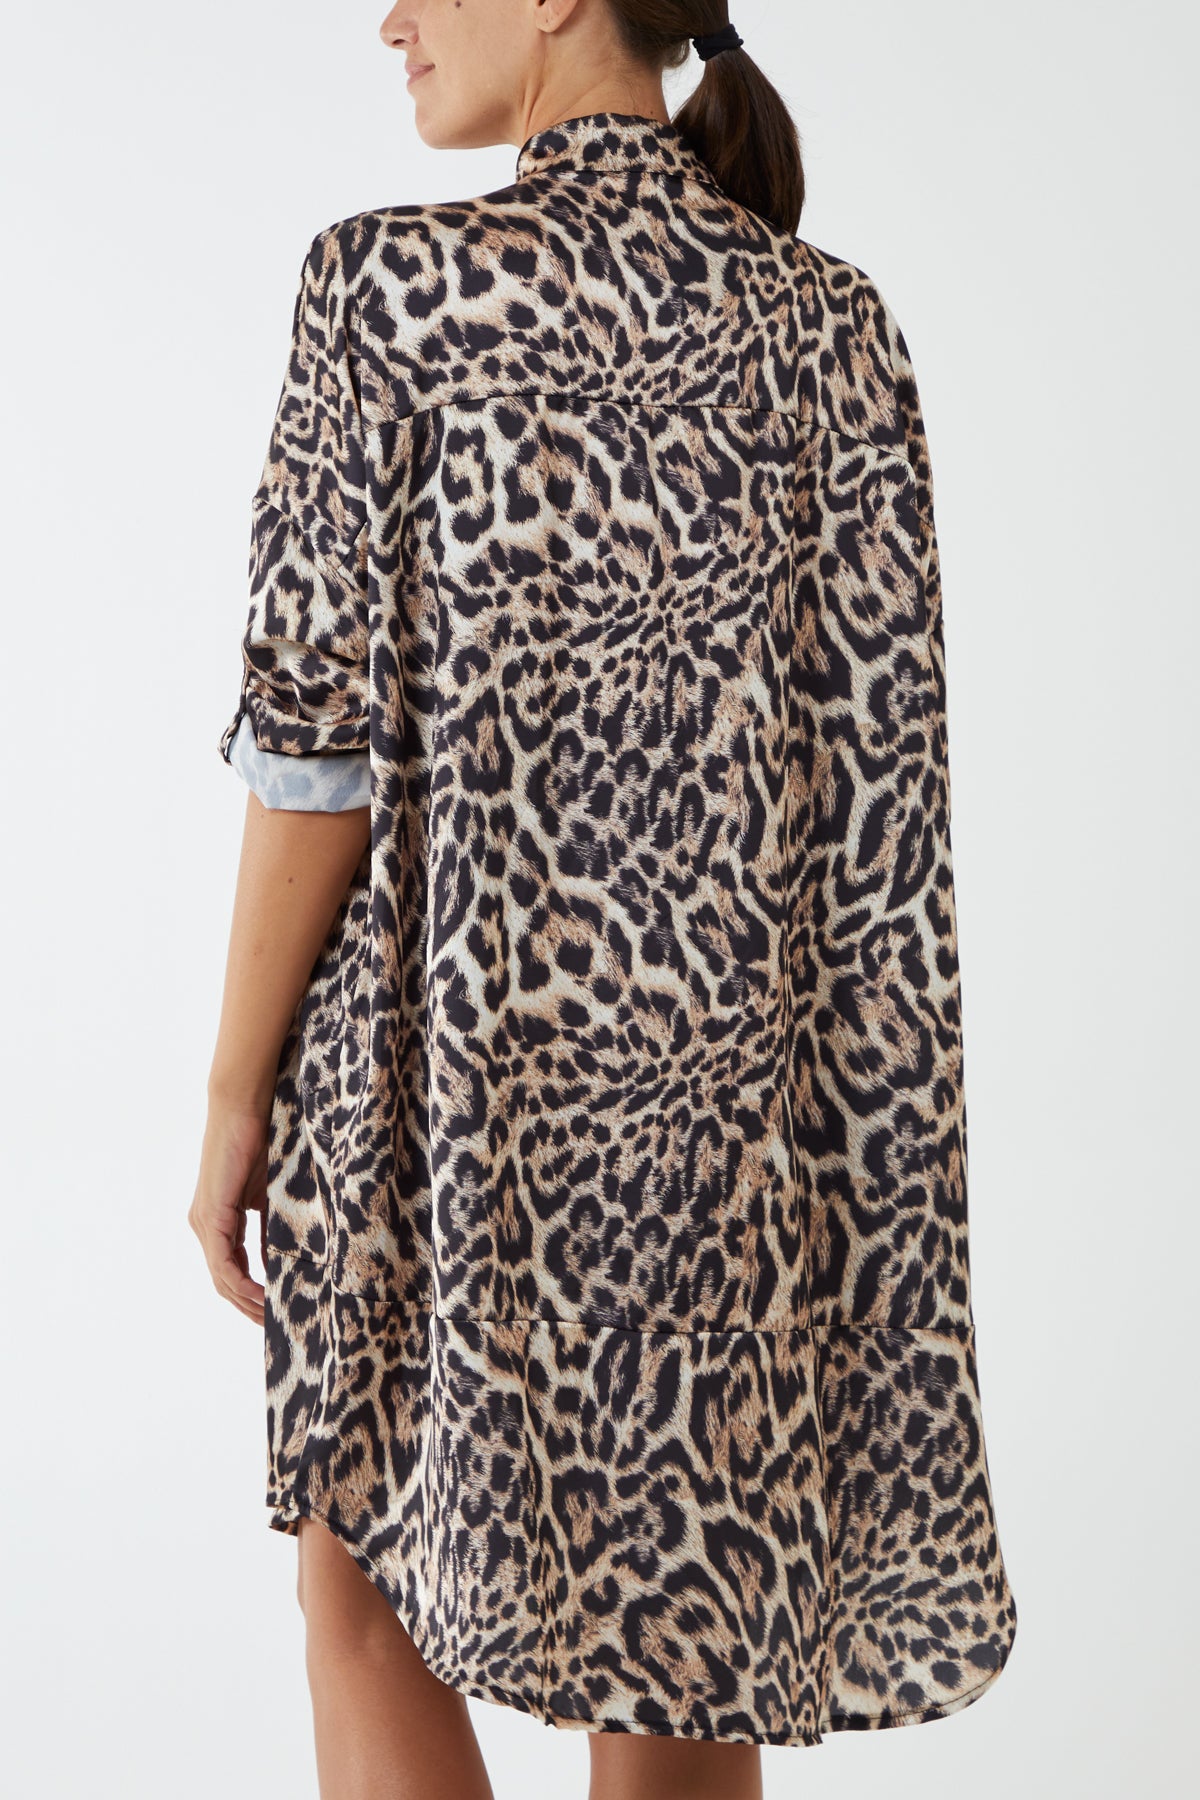 Satin Leopard Buttoned Sleeve Shirt Dress